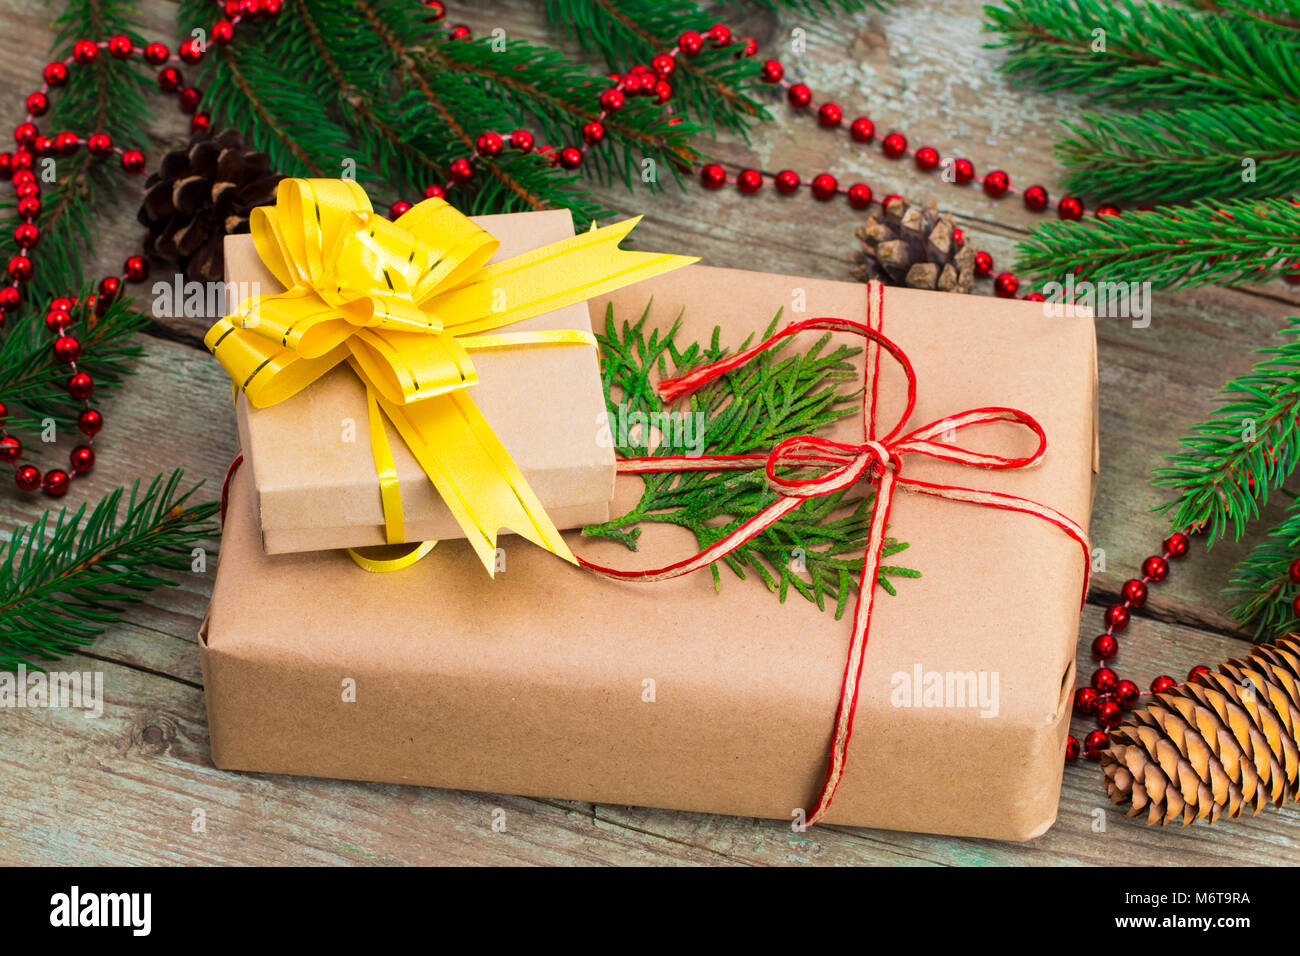 Weihnachten Geschenk "Jobticket" enthalten und Weihnachtsbäume auf Holz- Hintergrund. Stockfoto